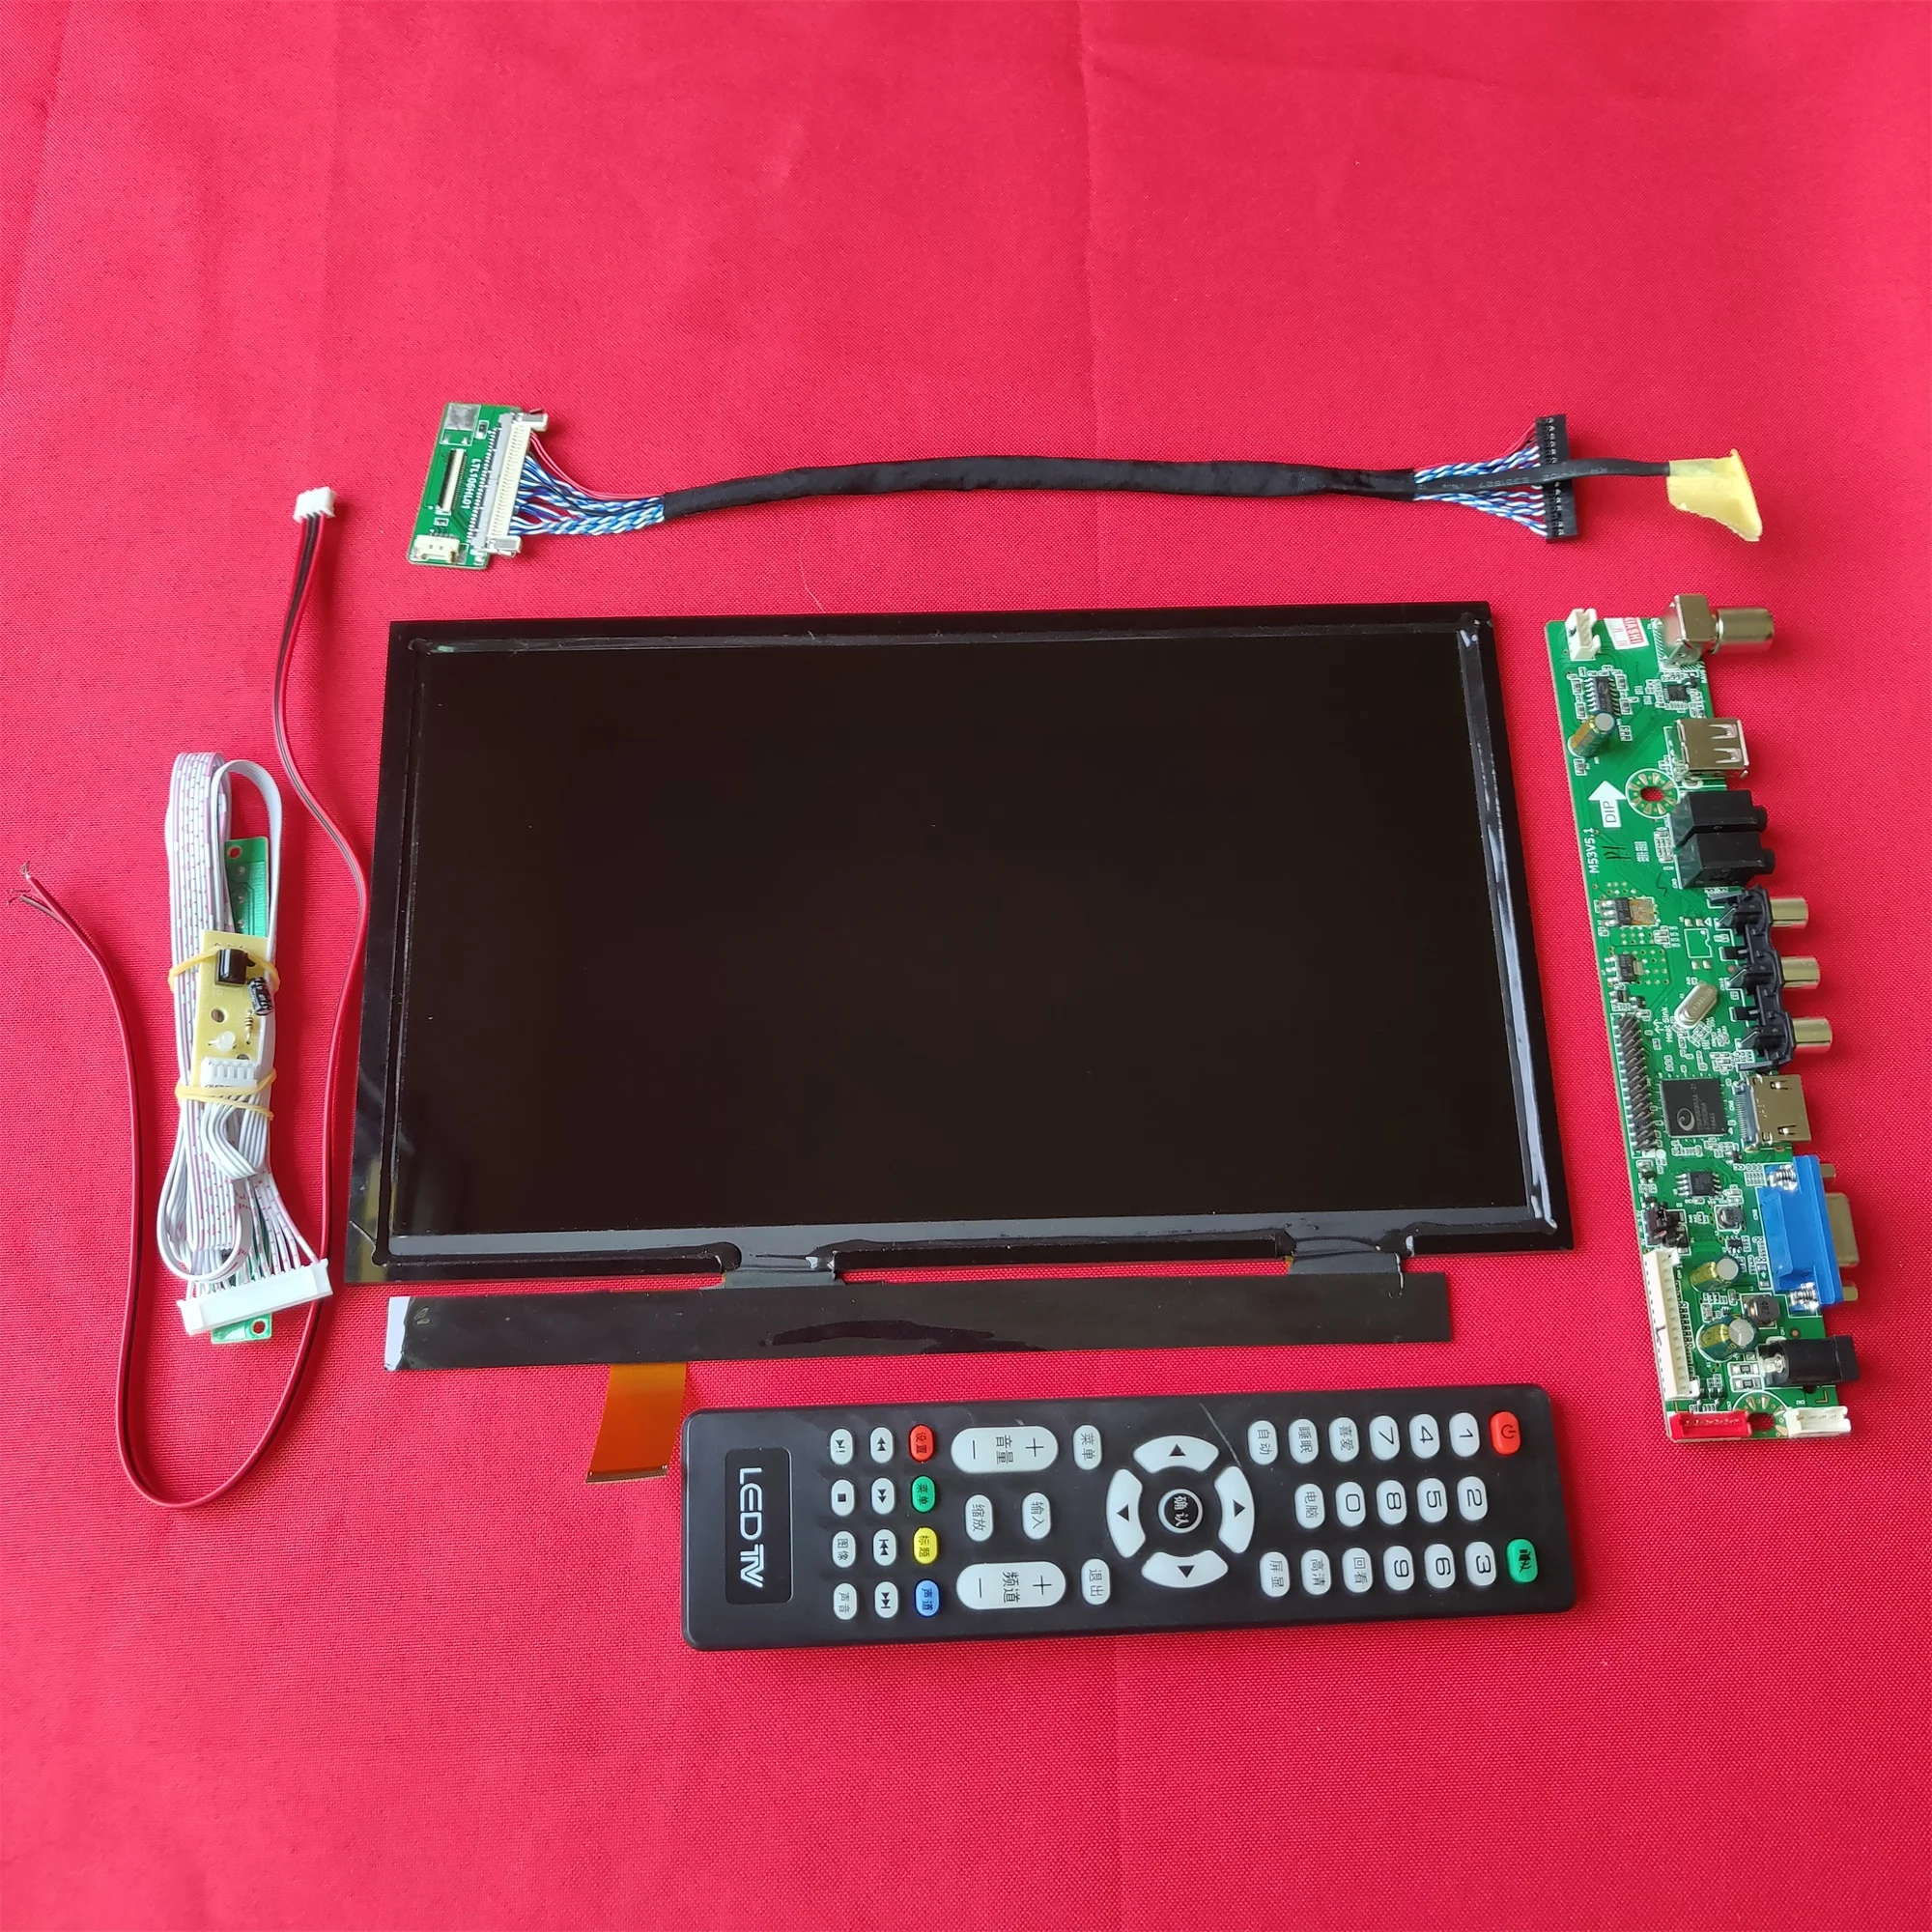 Дисплей-экран IPS 10,6 дюймов с разрешением 1920 * 1080 и драйверной платой, совместимый с HDMI-VGA-AV-USB-TV для комплекта DIY-проектора для домашнего кинотеатра.